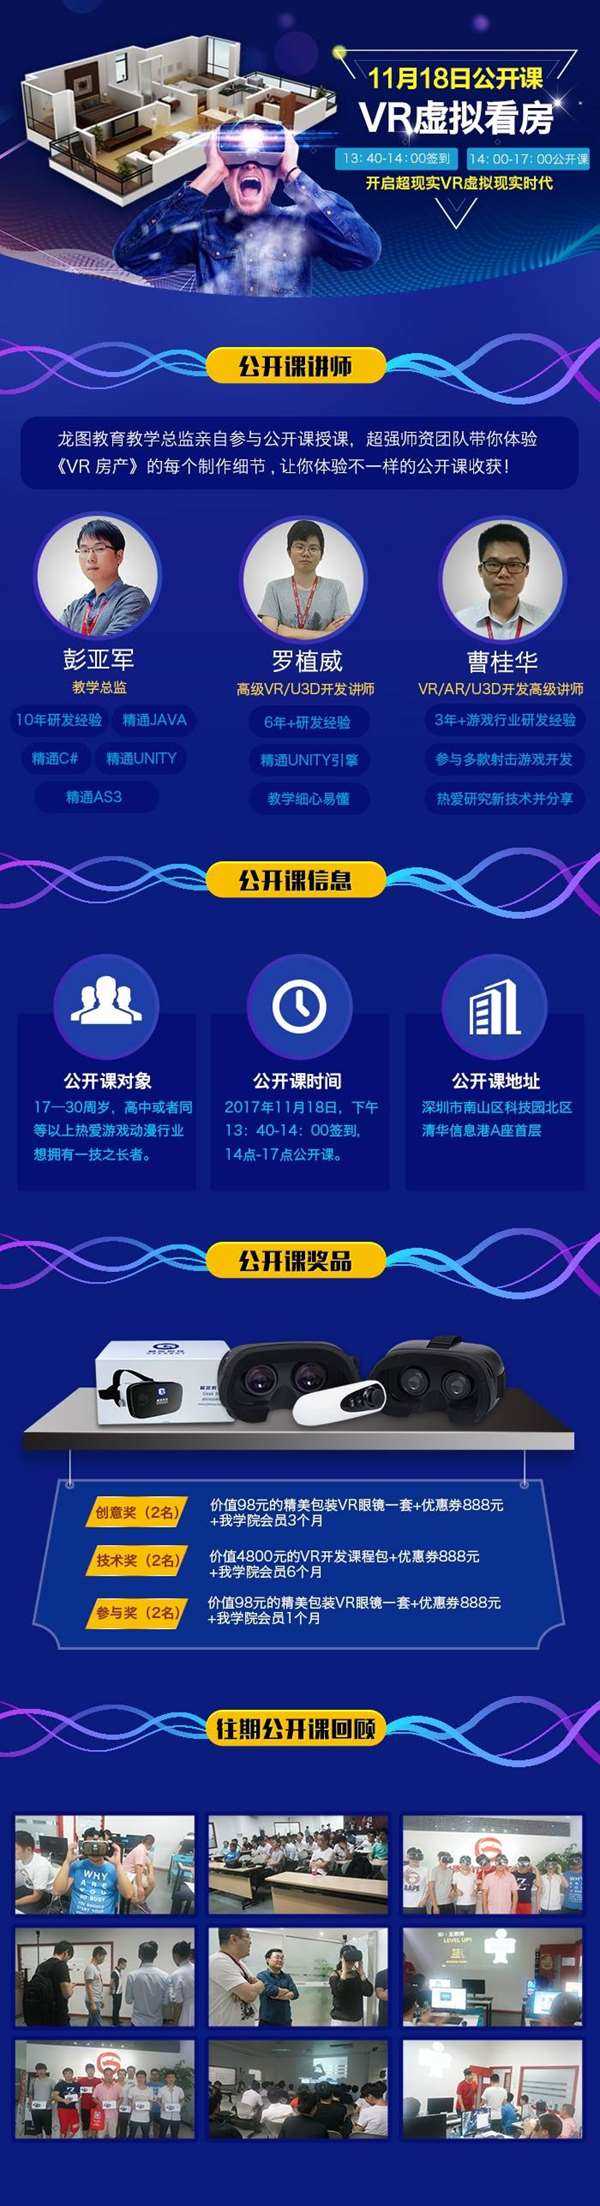 龙图教育深圳南山免费VR体验公开课.jpg